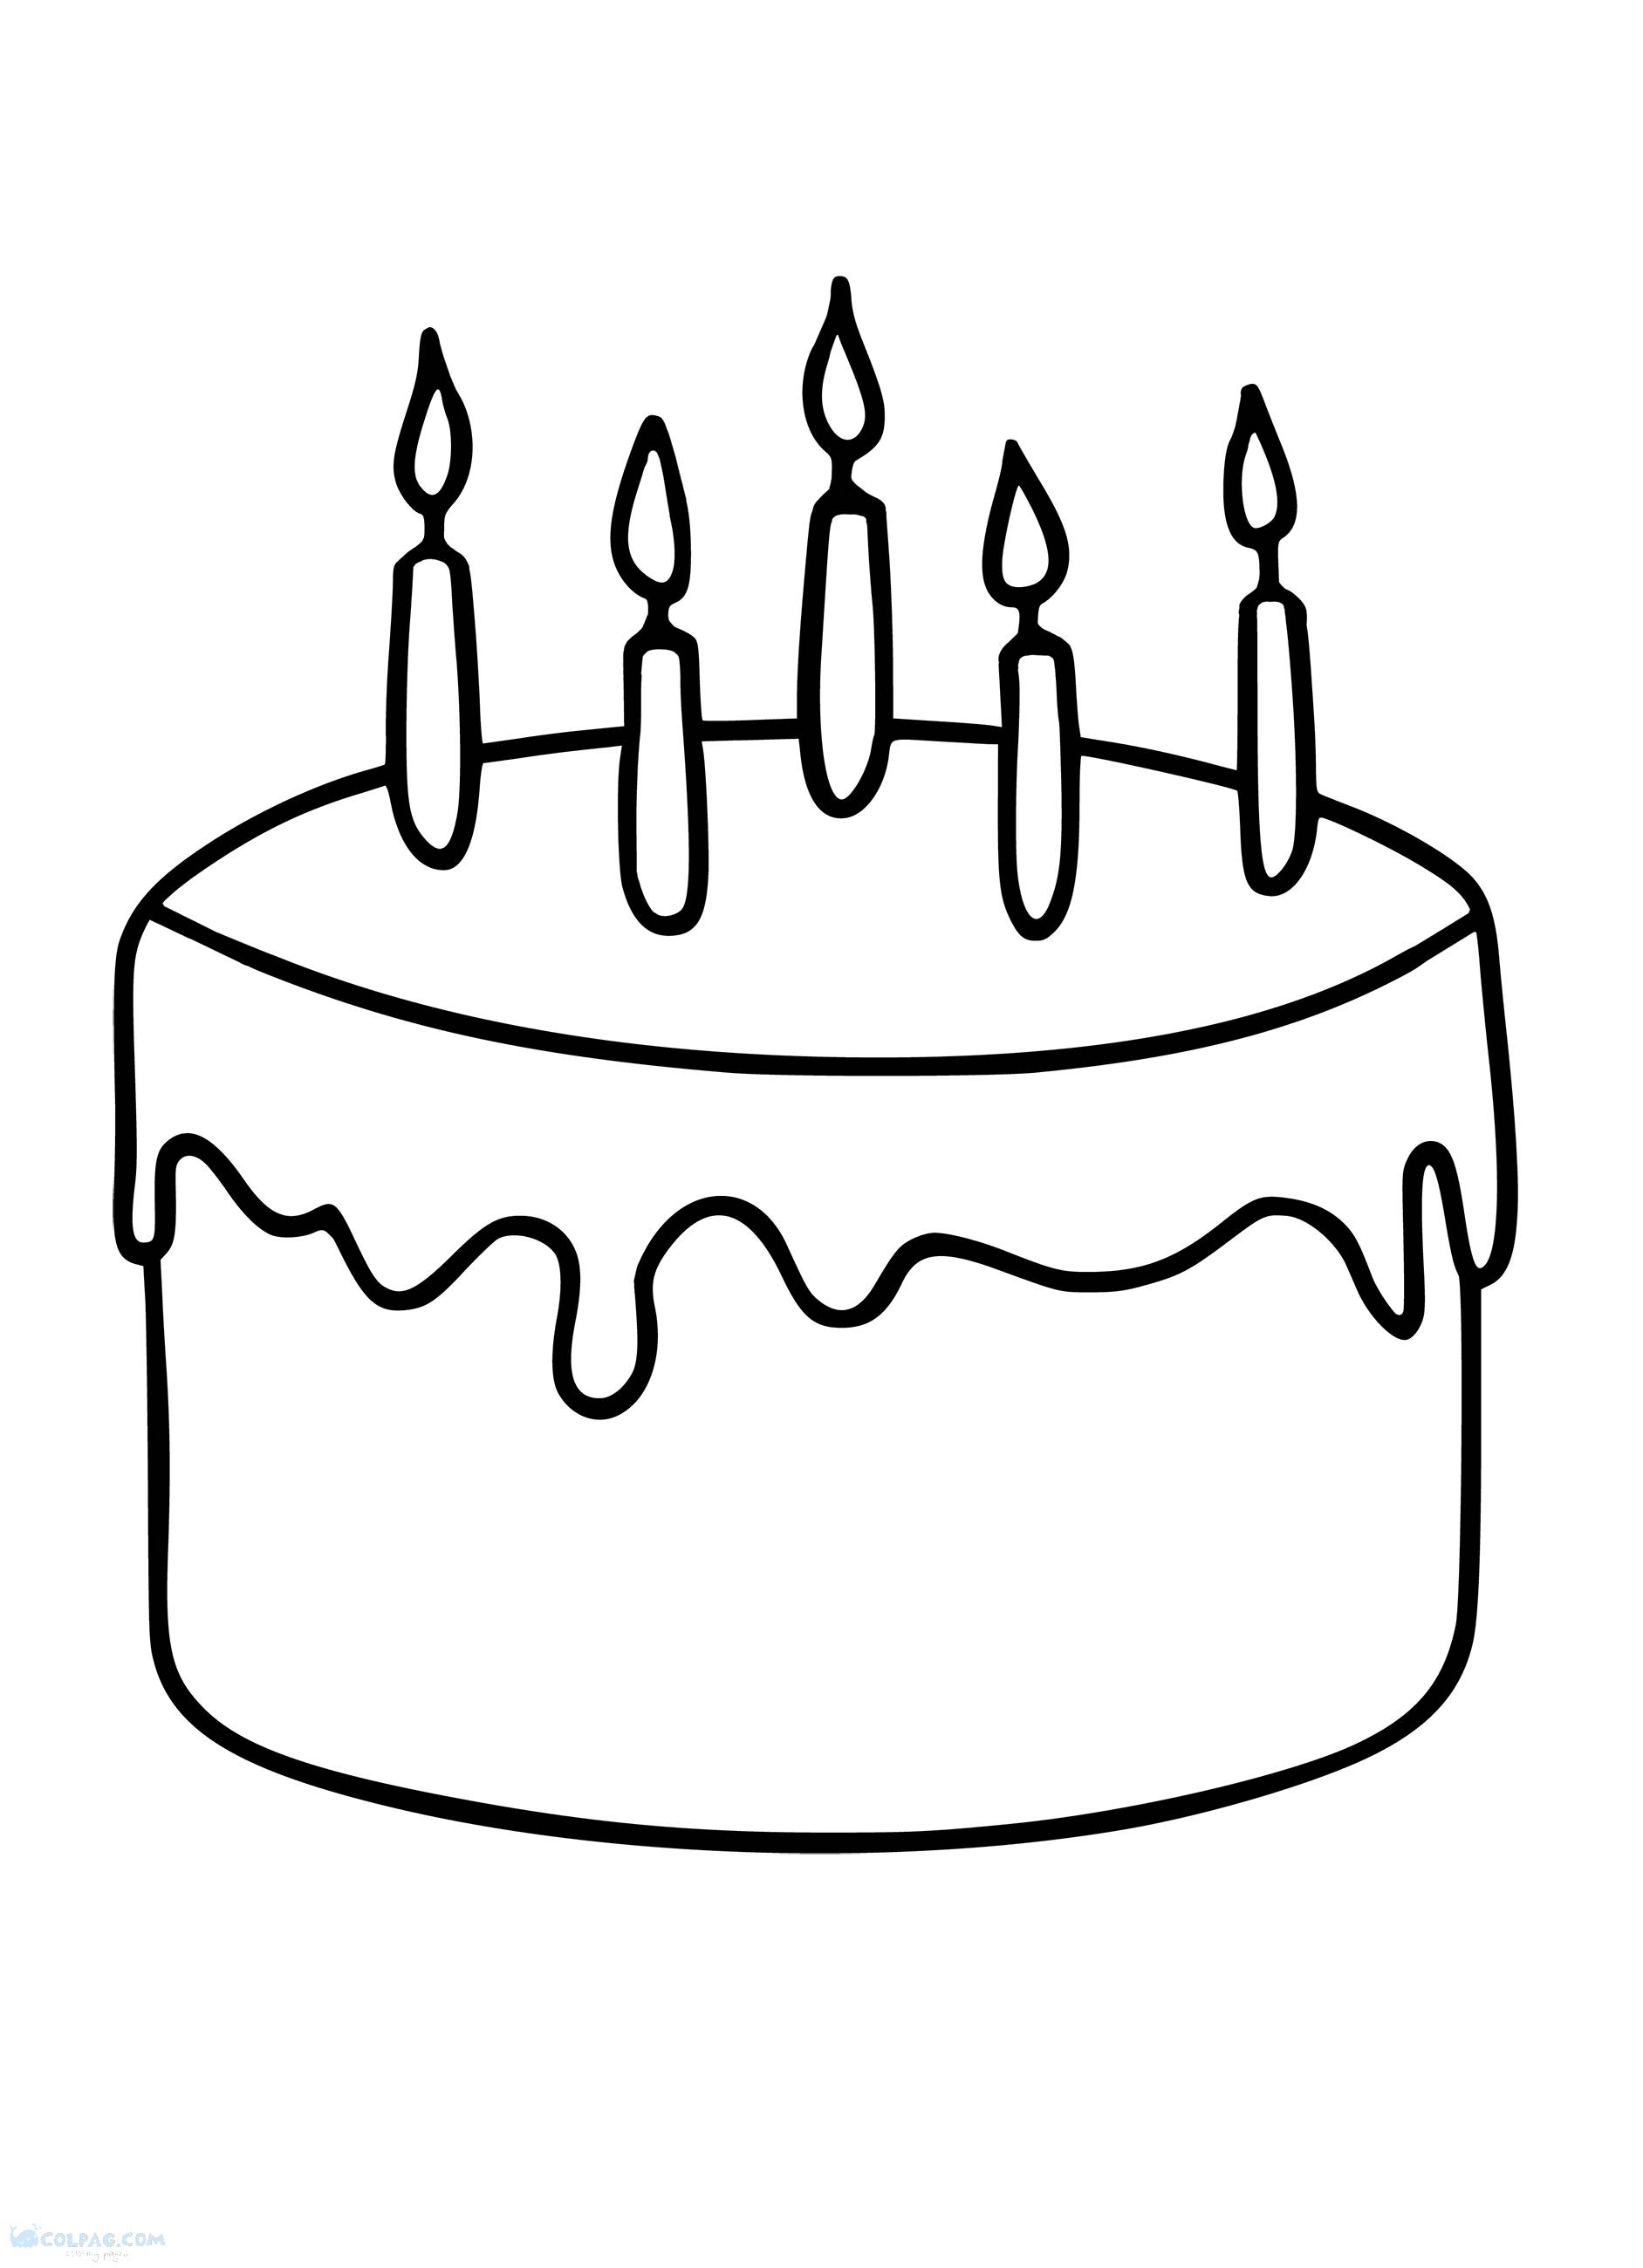 Рисовать рисунки на день рождения. Рисунок на день рождения. Торт раскраска для детей. Торт картинка раскраска. Тортик раскраска для детей.